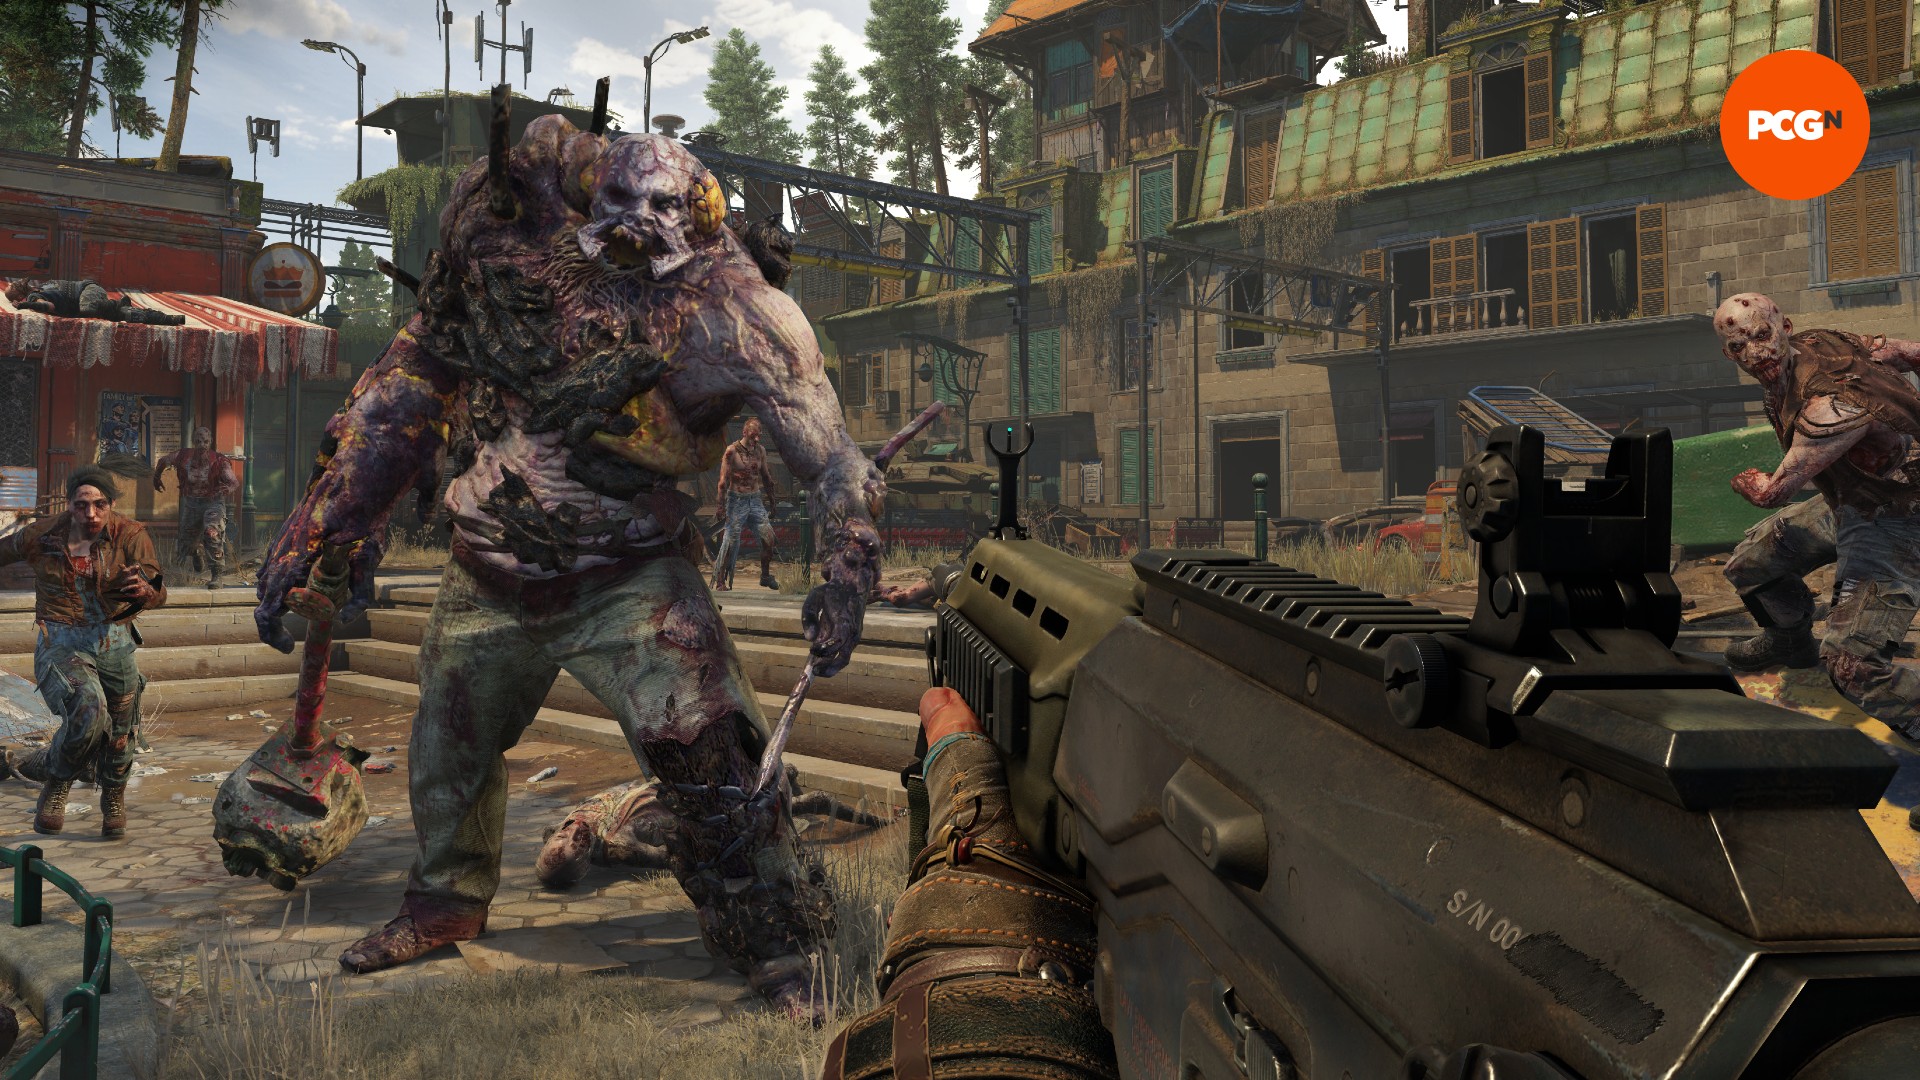 Eine riesige Zombie-Kreatur geht auf einen Mann mit einer Waffe zu, flankiert von kleineren Zombies.